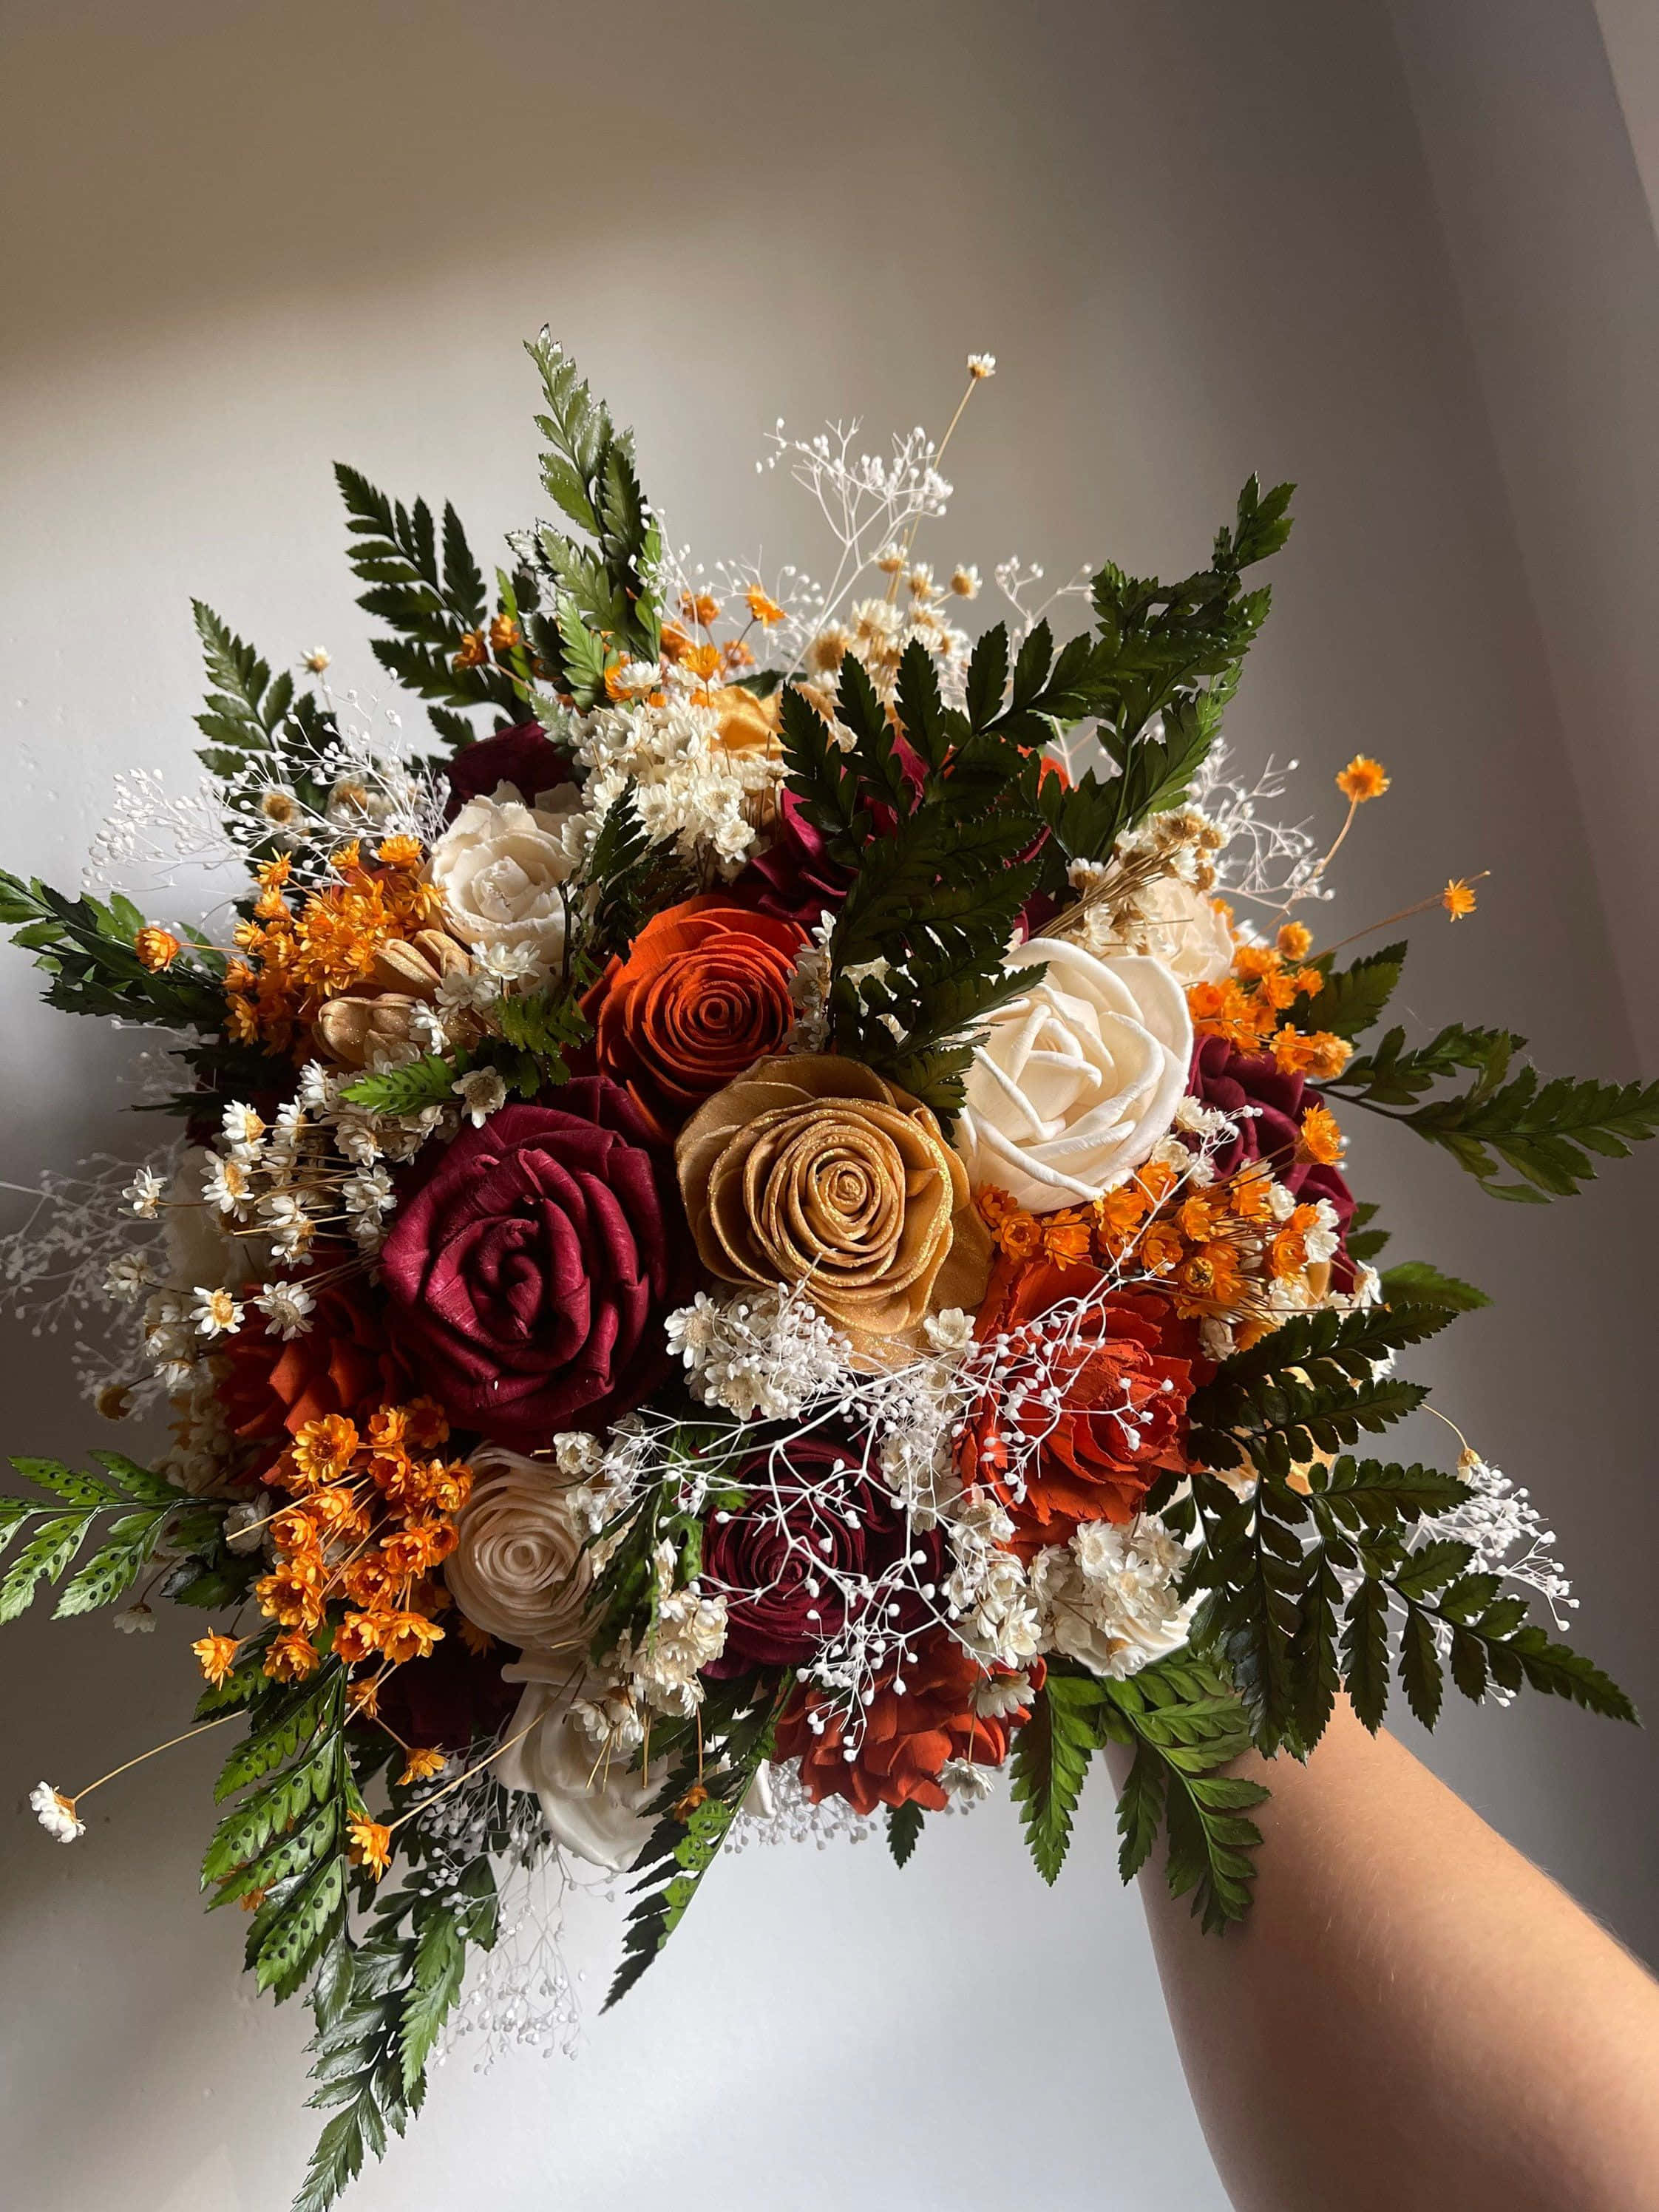 Exquisite Floral Arrangement - A Diverse Bouquet in Full Bloom